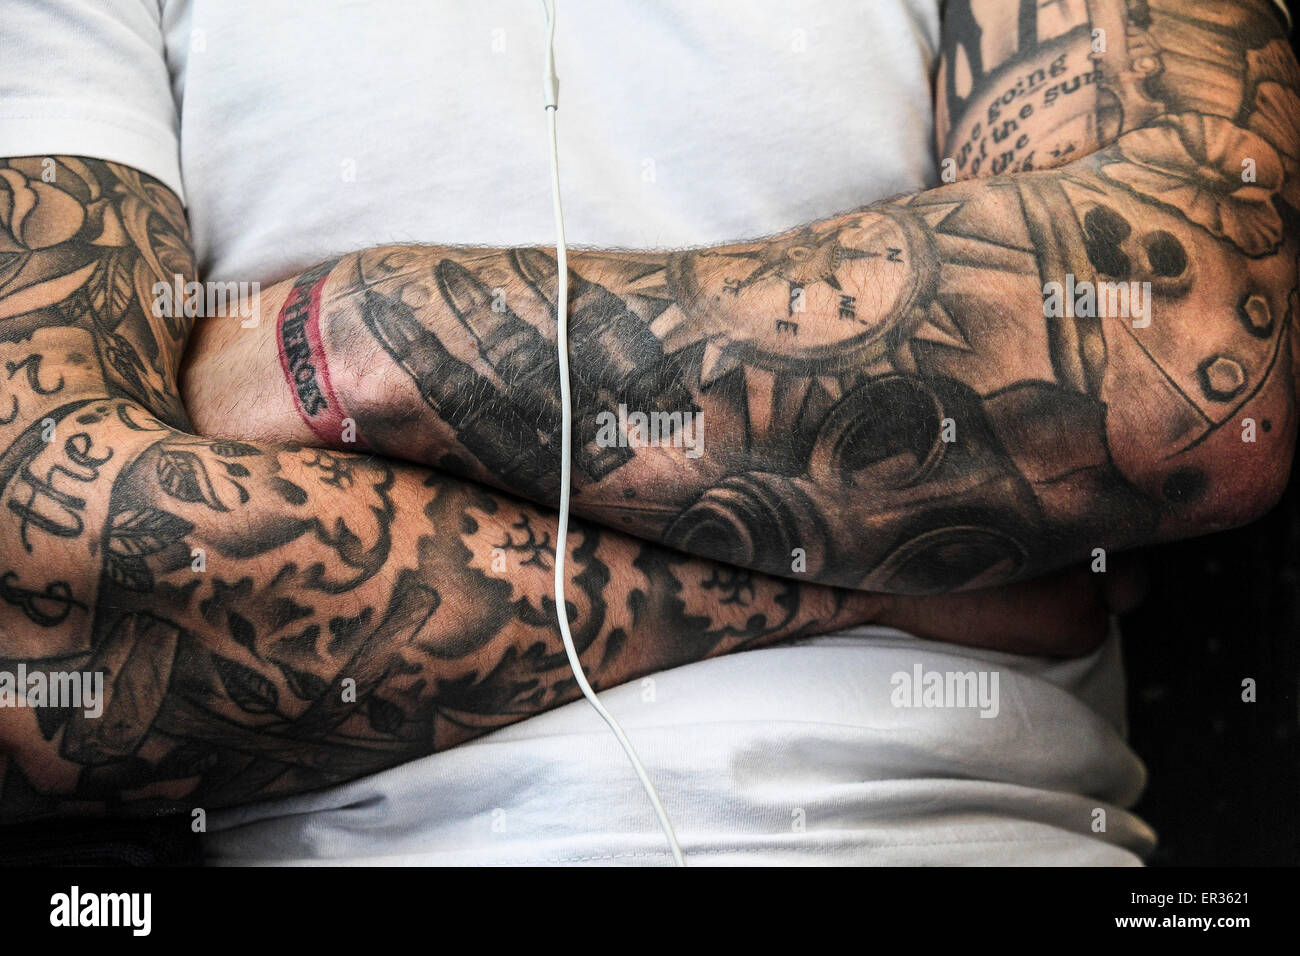 Braccia tatuate immagini e fotografie stock ad alta risoluzione - Alamy